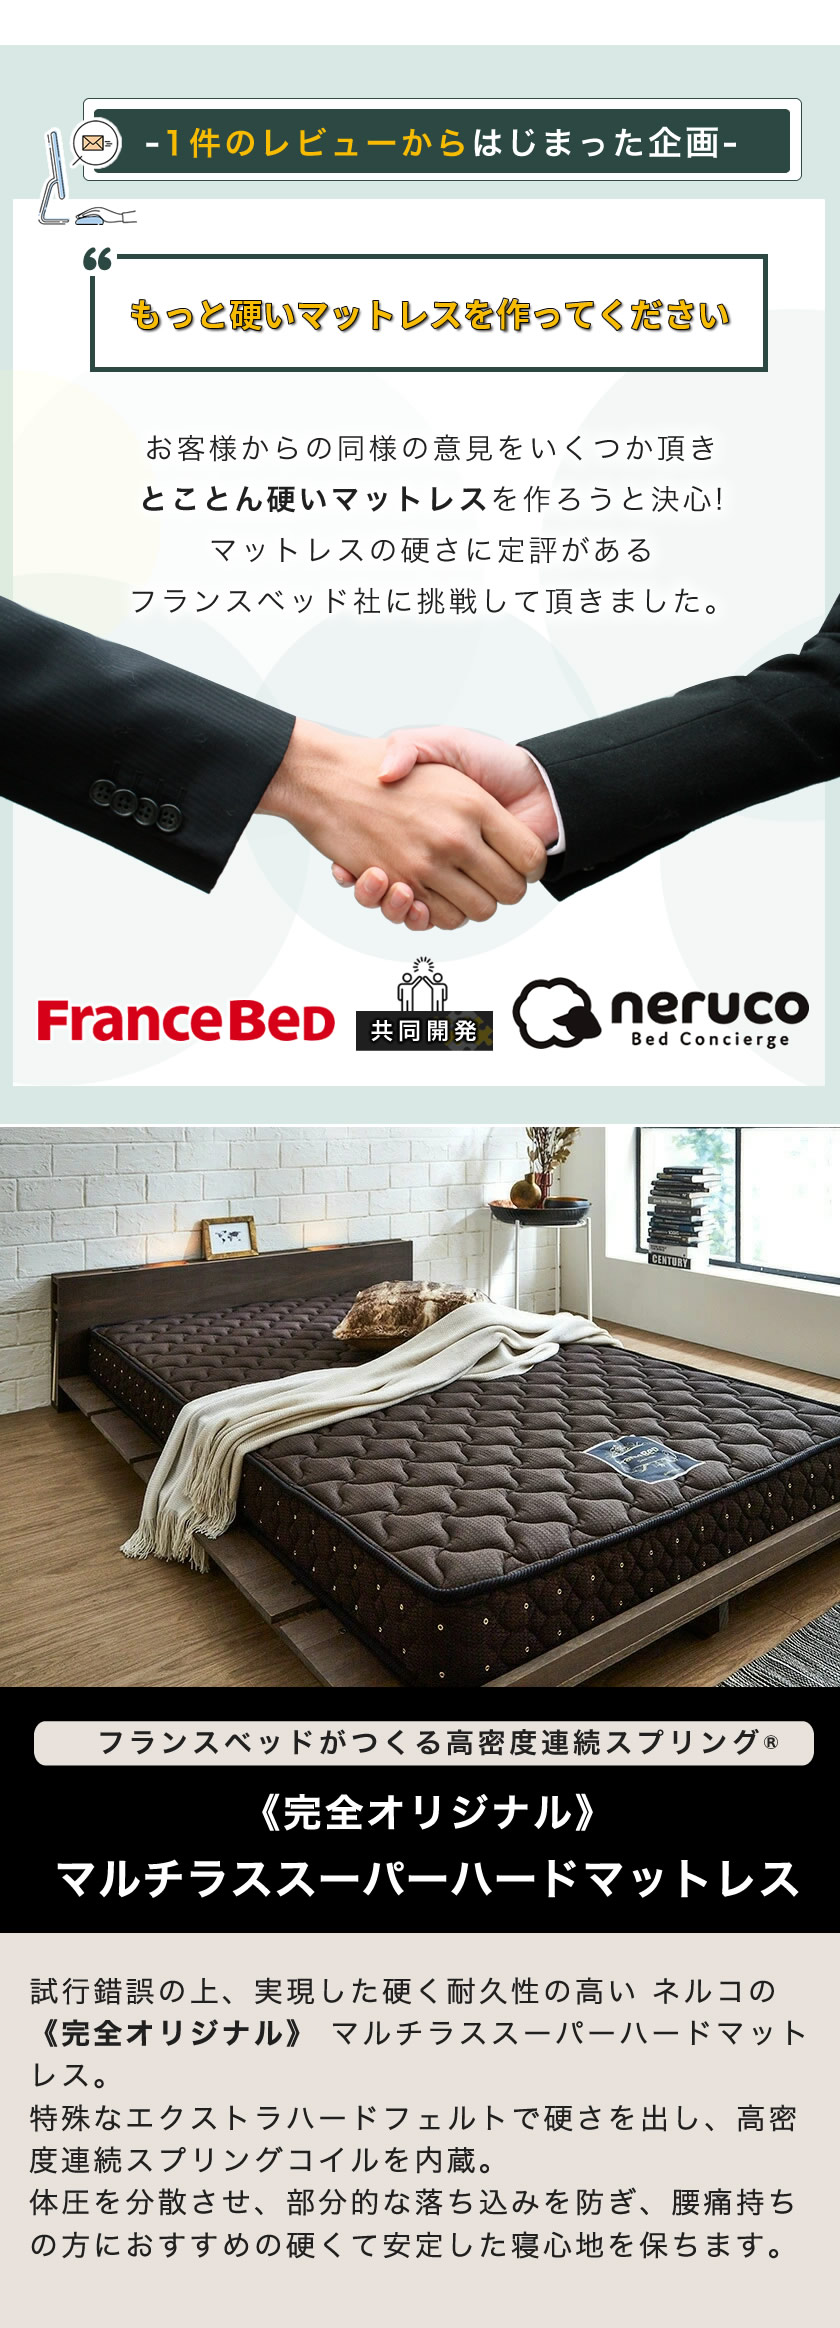 硬めの寝心地を求める方におススメ フランスベッドとネルコ共同開発オリジナルベッドマットレス